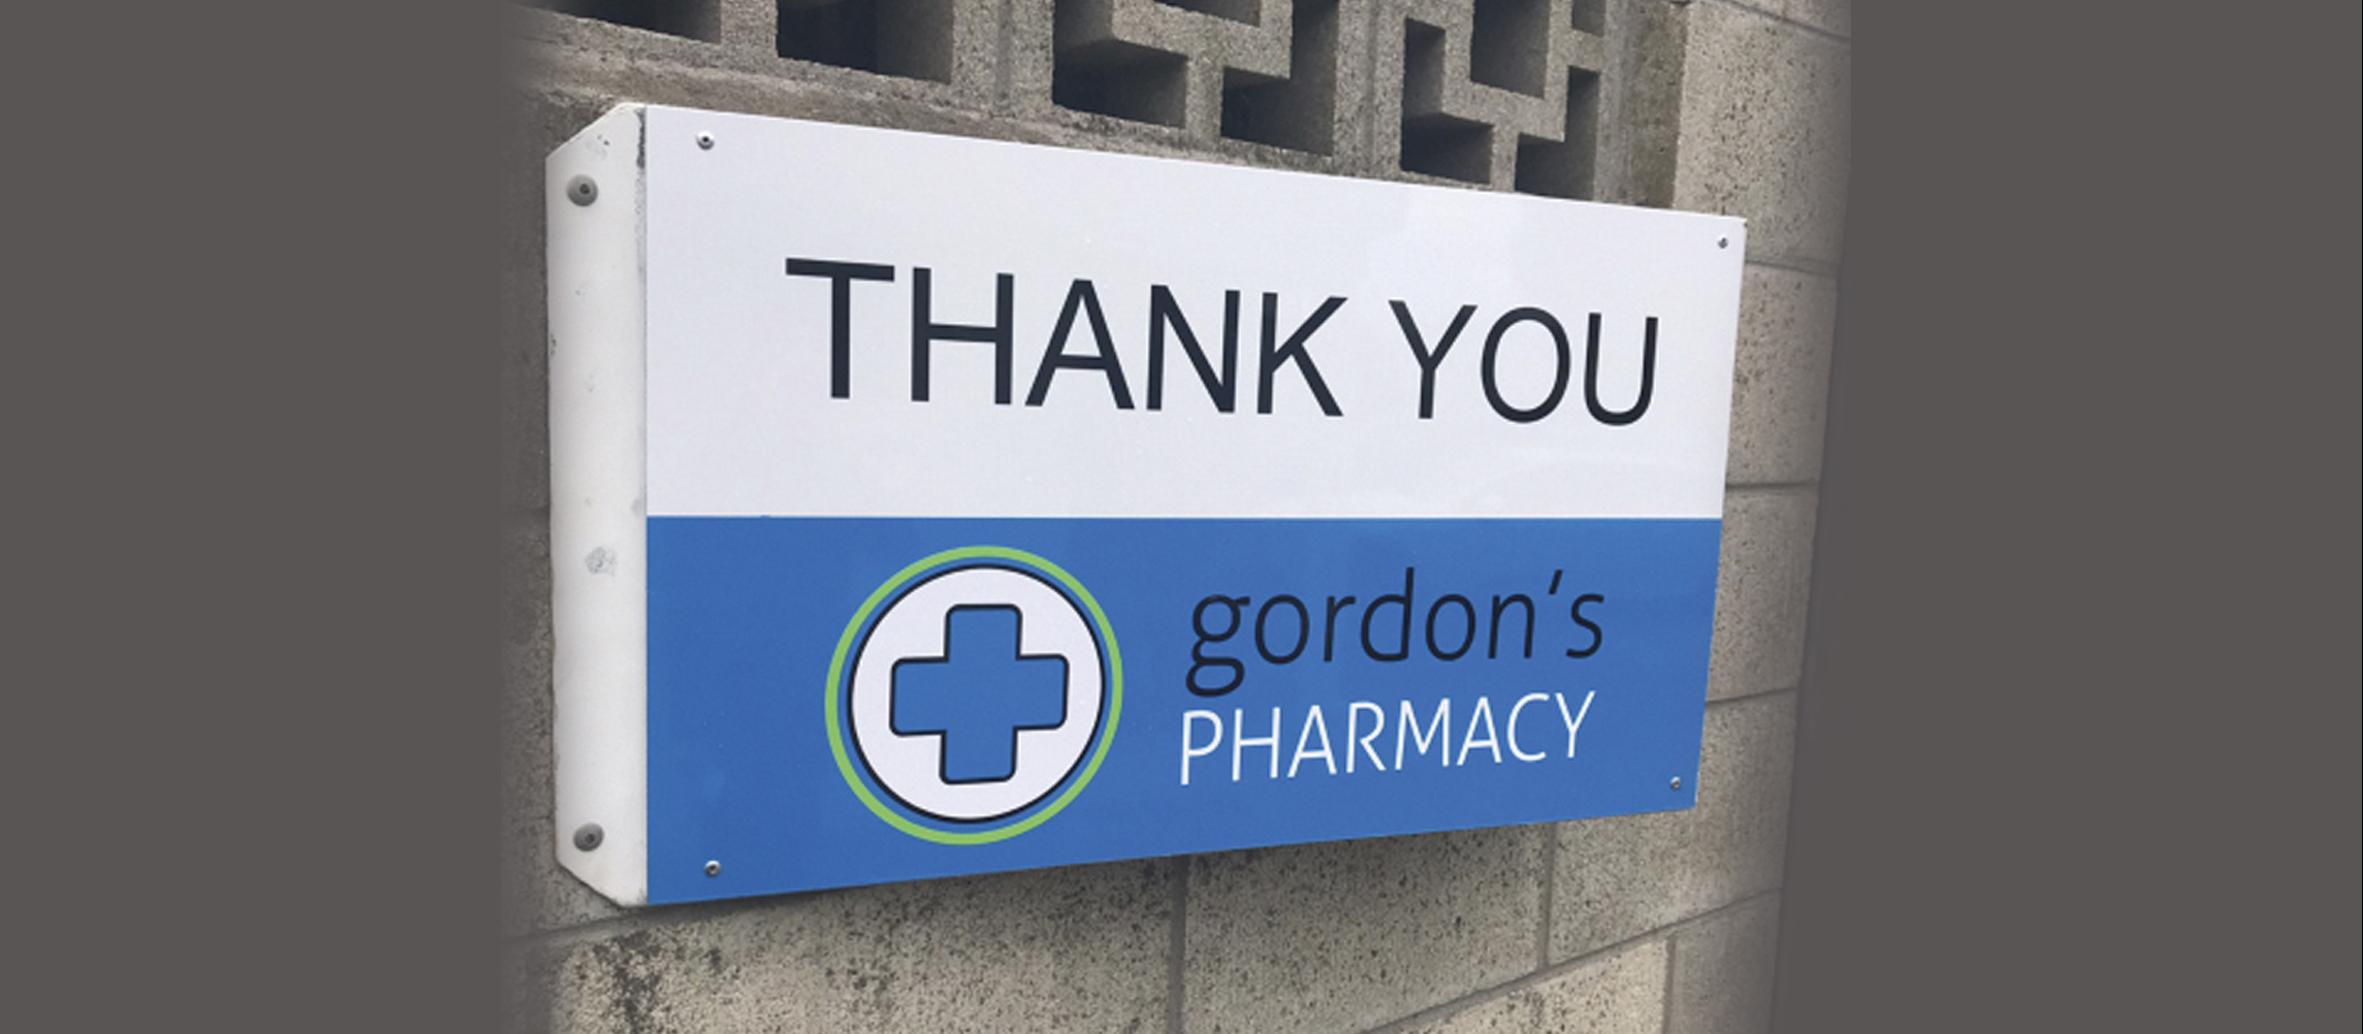 Gordon Pharmacy Thank You sign